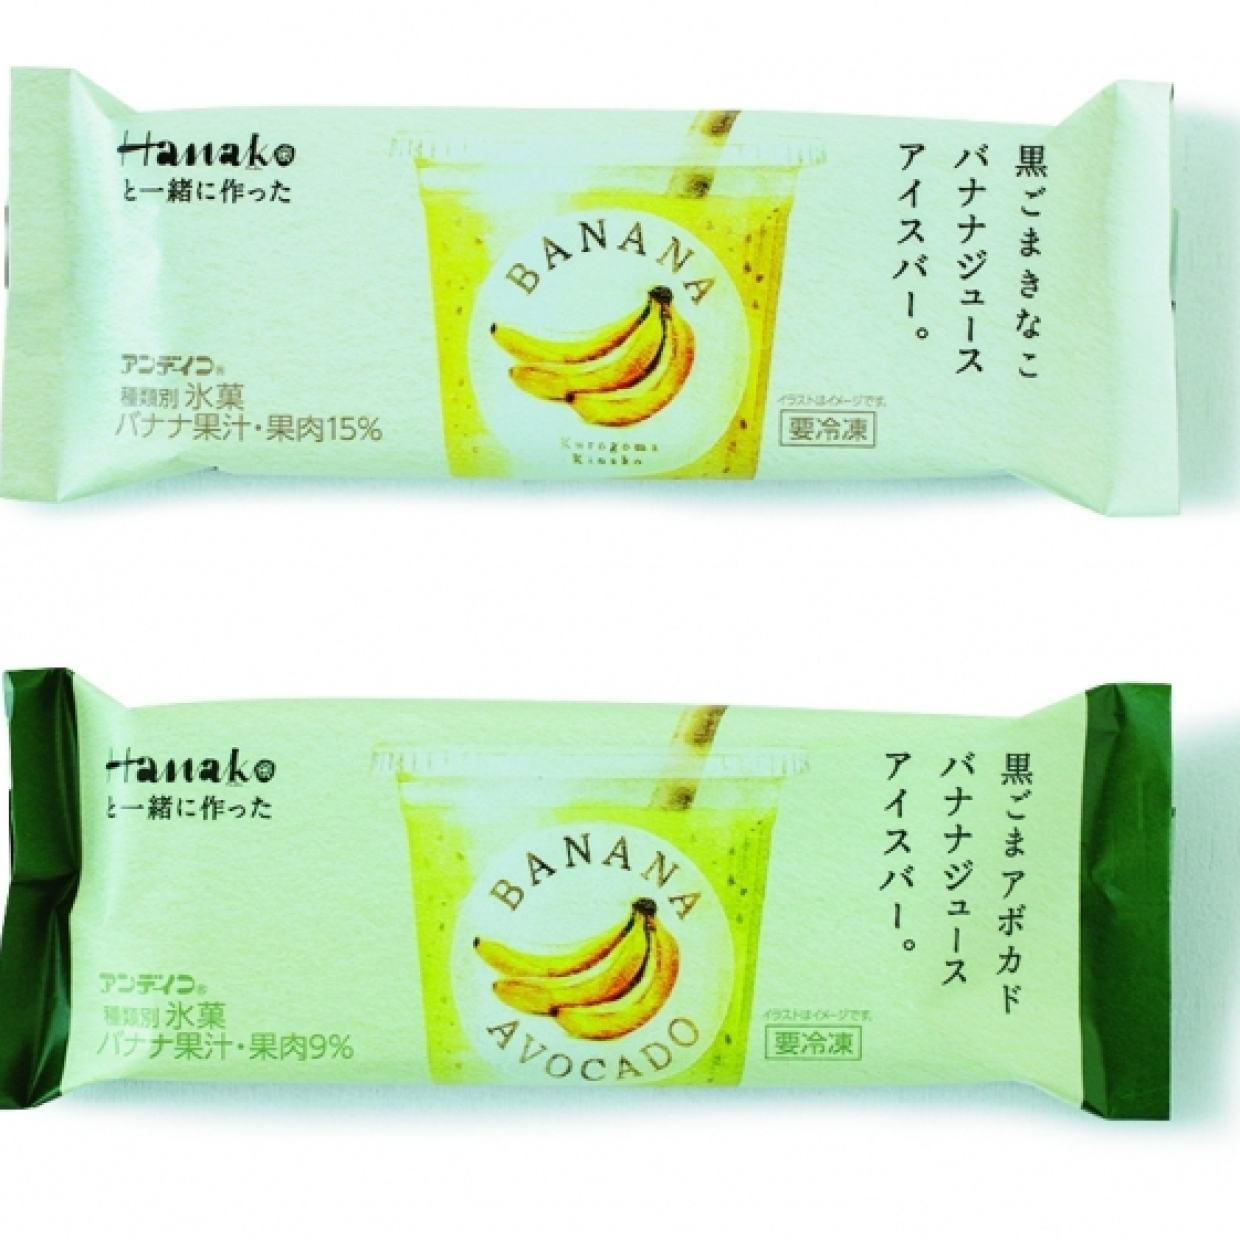  【ファミマ限定】雑誌『Hanako』監修の「バナナジュースアイスバー」が数量限定で販売開始！ 